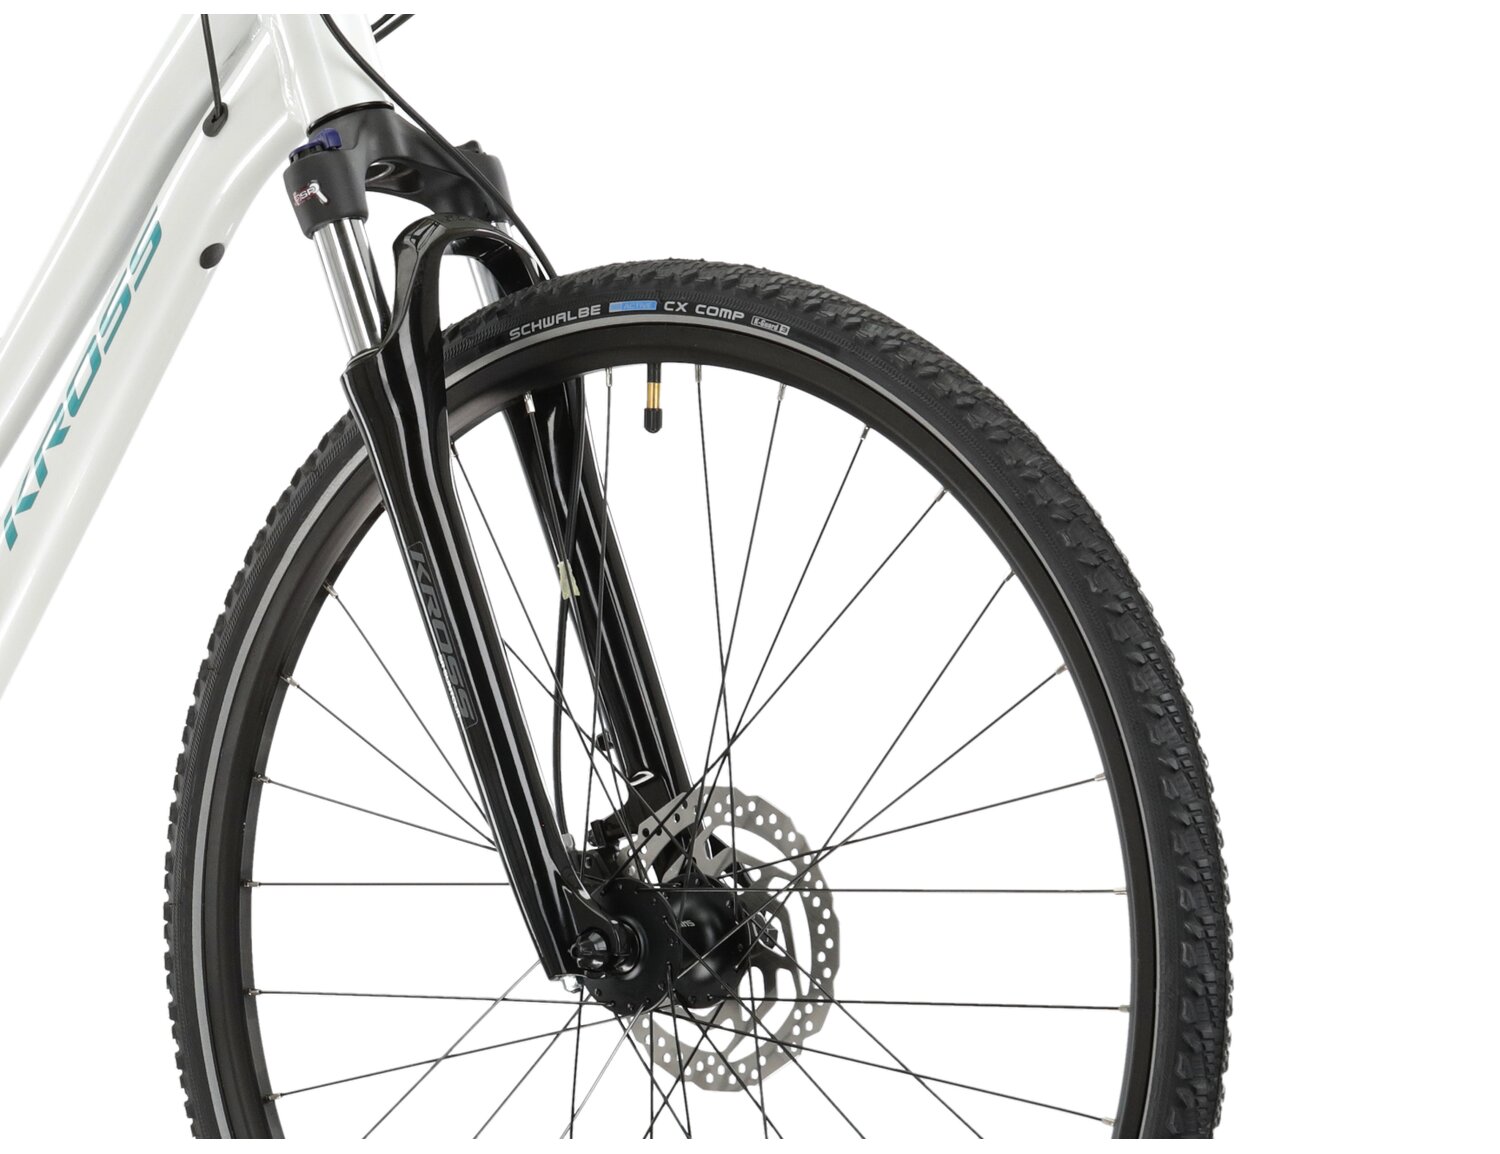 Aluminowa rama, amortyzowany widelec SR SUNTOUR NEX HLO oraz opony Schwalbe w rowerze crossowymym damskim KROSS Evado 7.0 